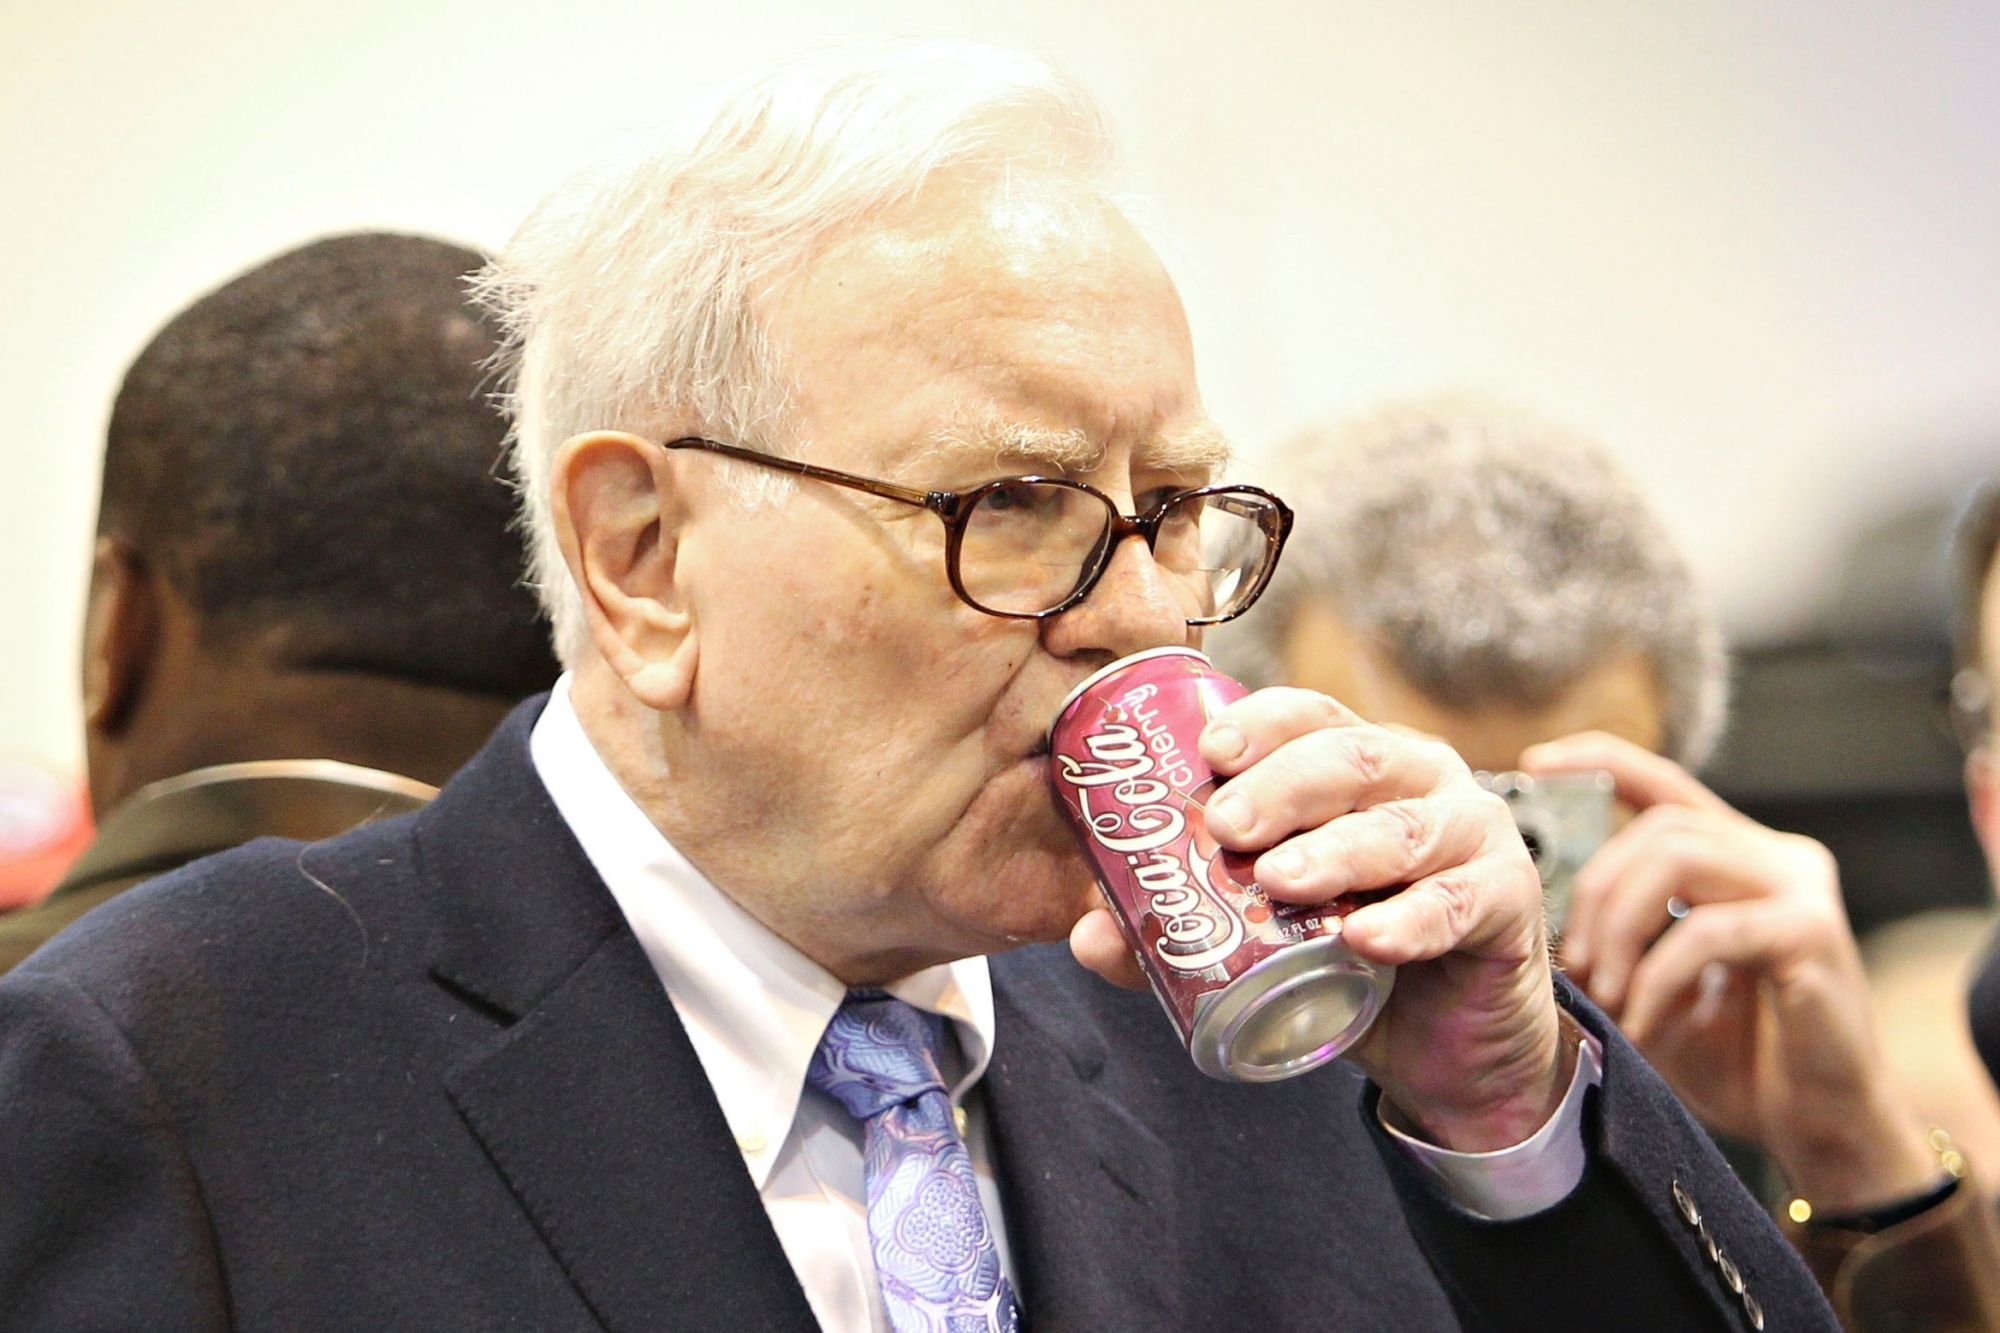 愛喝可樂的巴菲特所管理的公司，更持有可口可樂 9.3% 股份